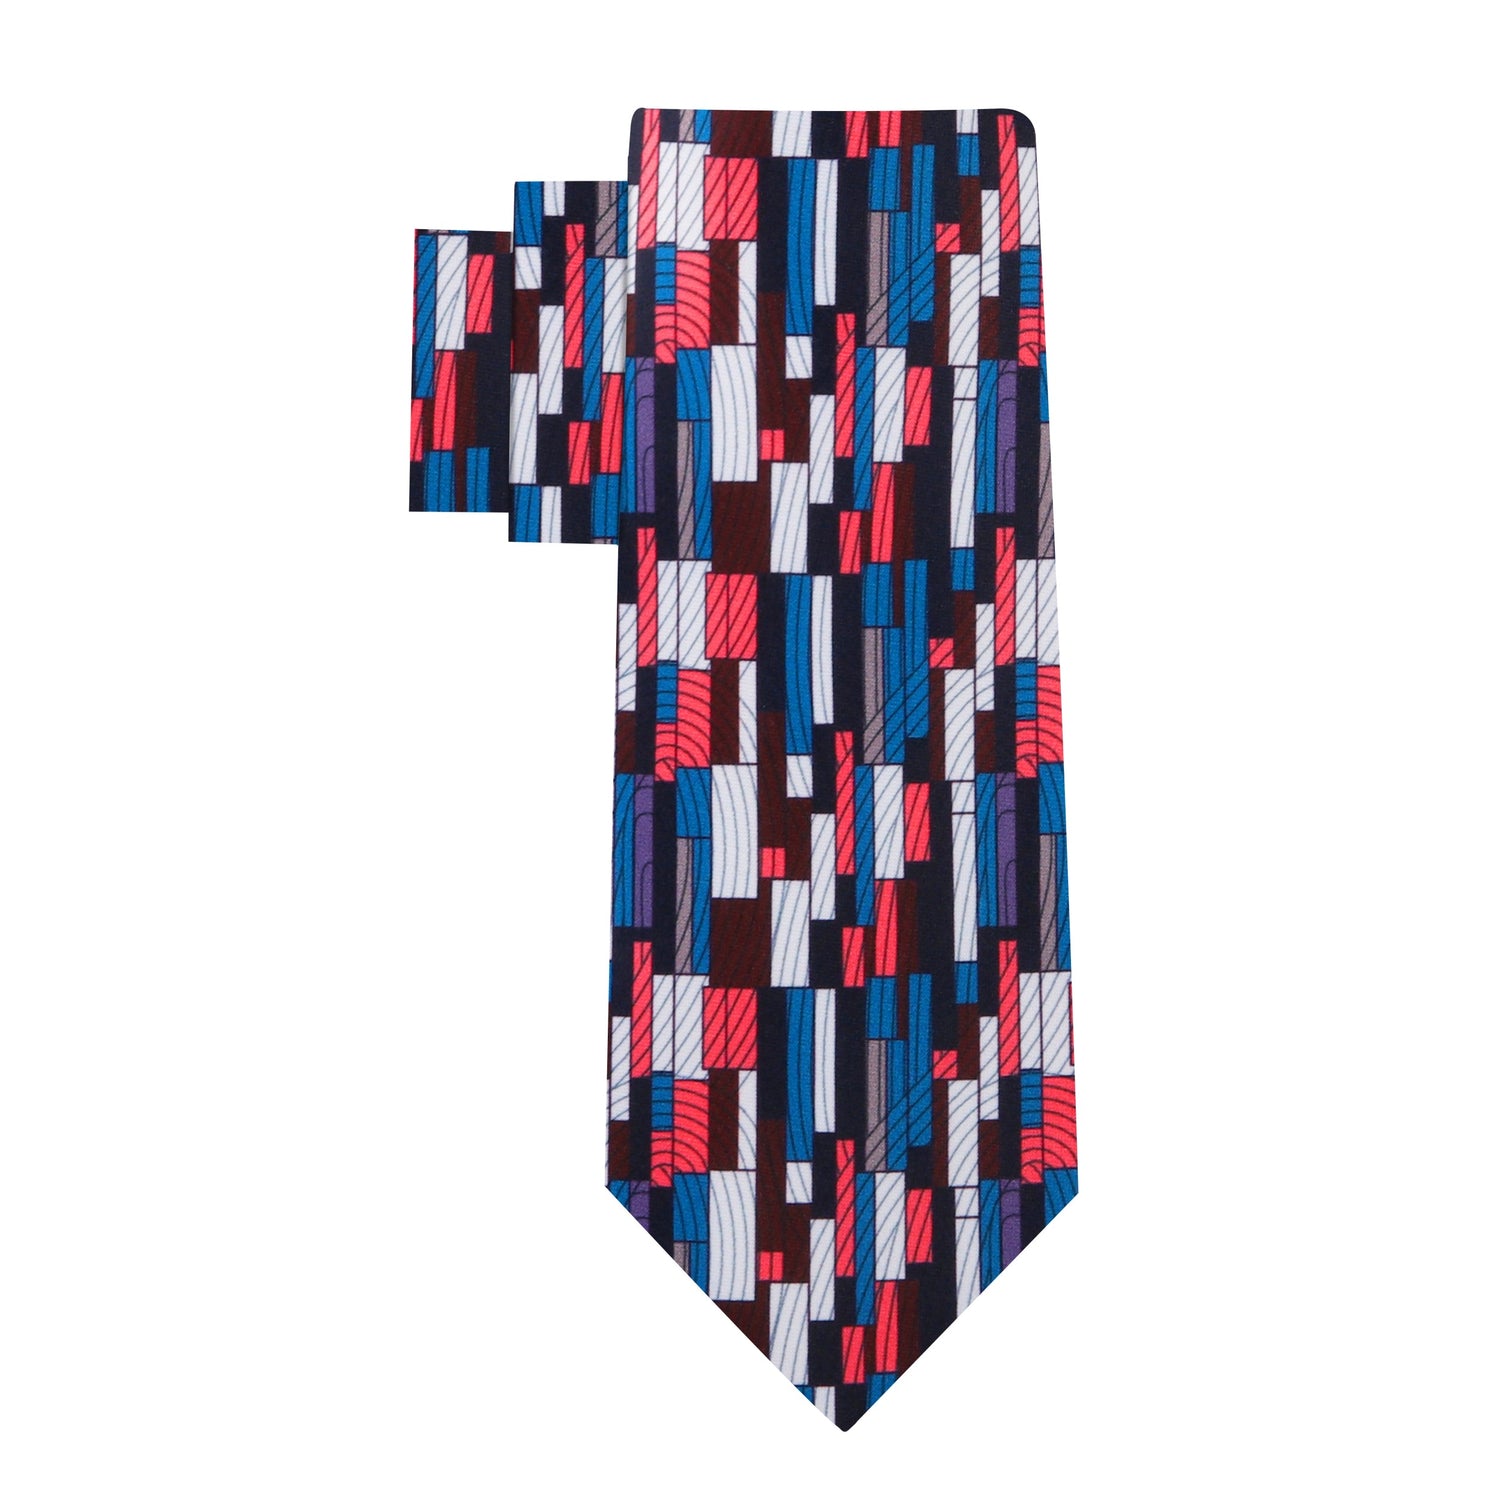 Alt View: Red, White, Blue Kente Pattern Necktie